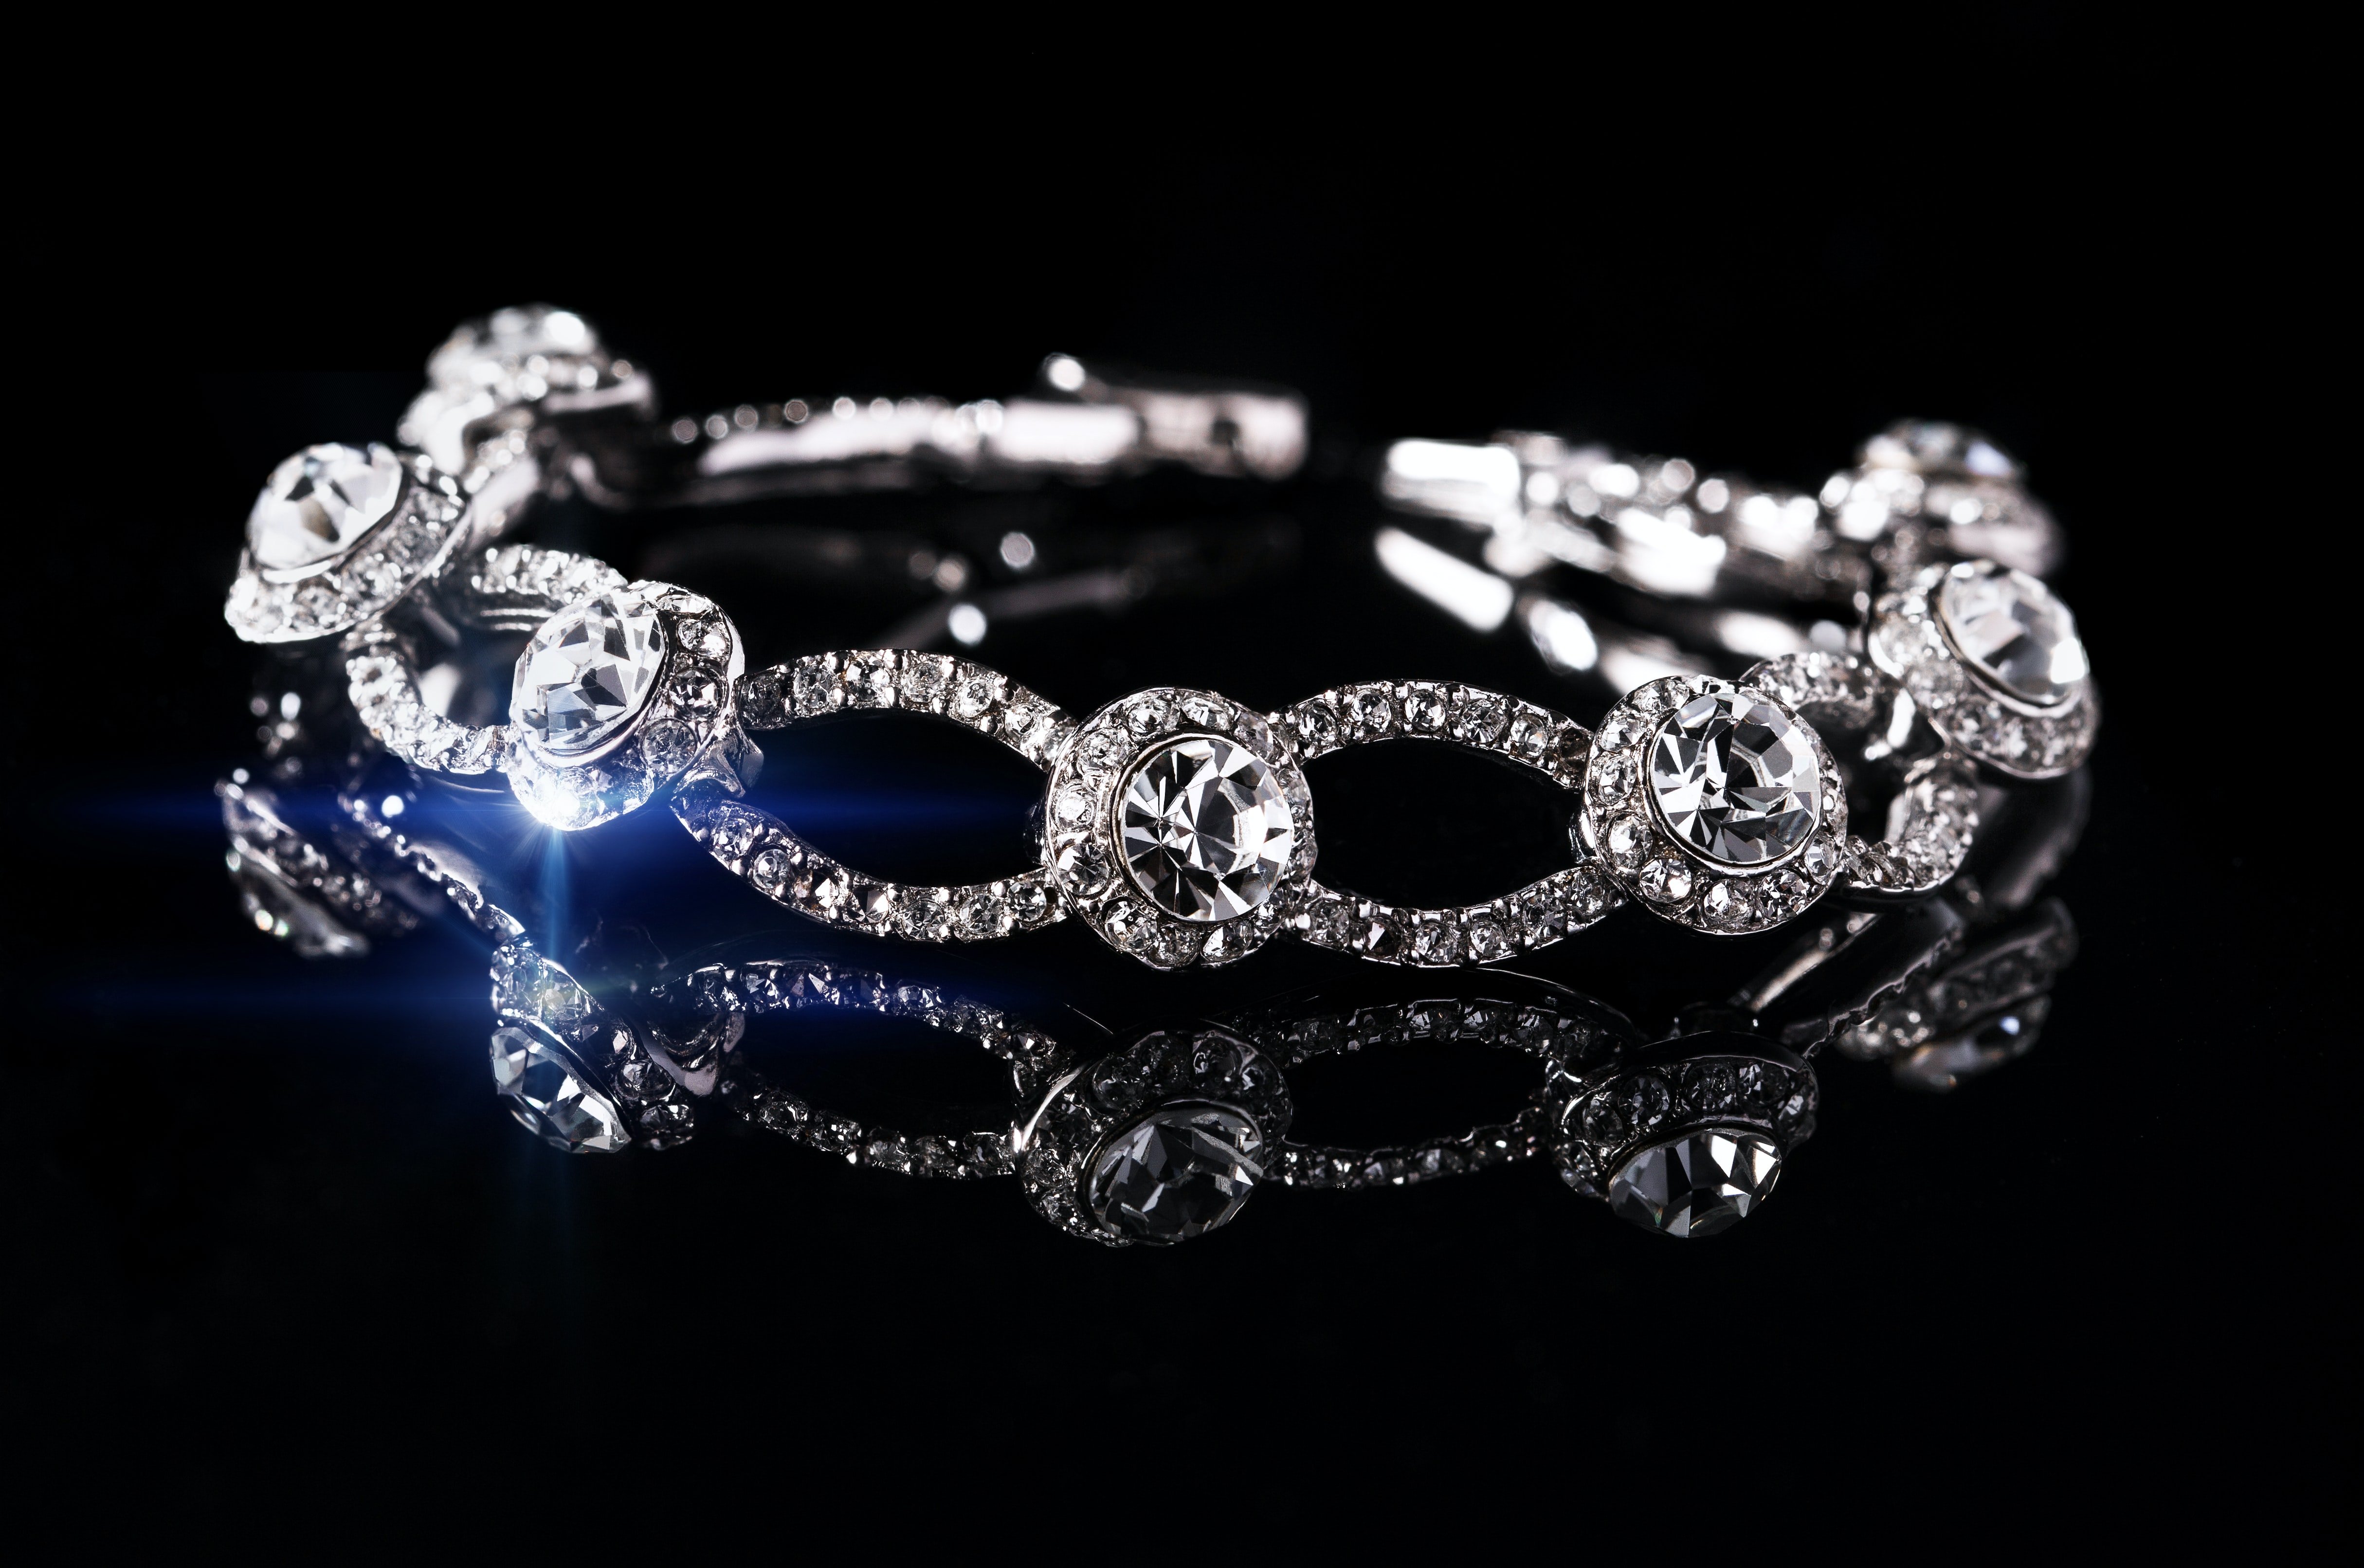 Wendys Diamantarmband verschwand. | Quelle: Unsplash